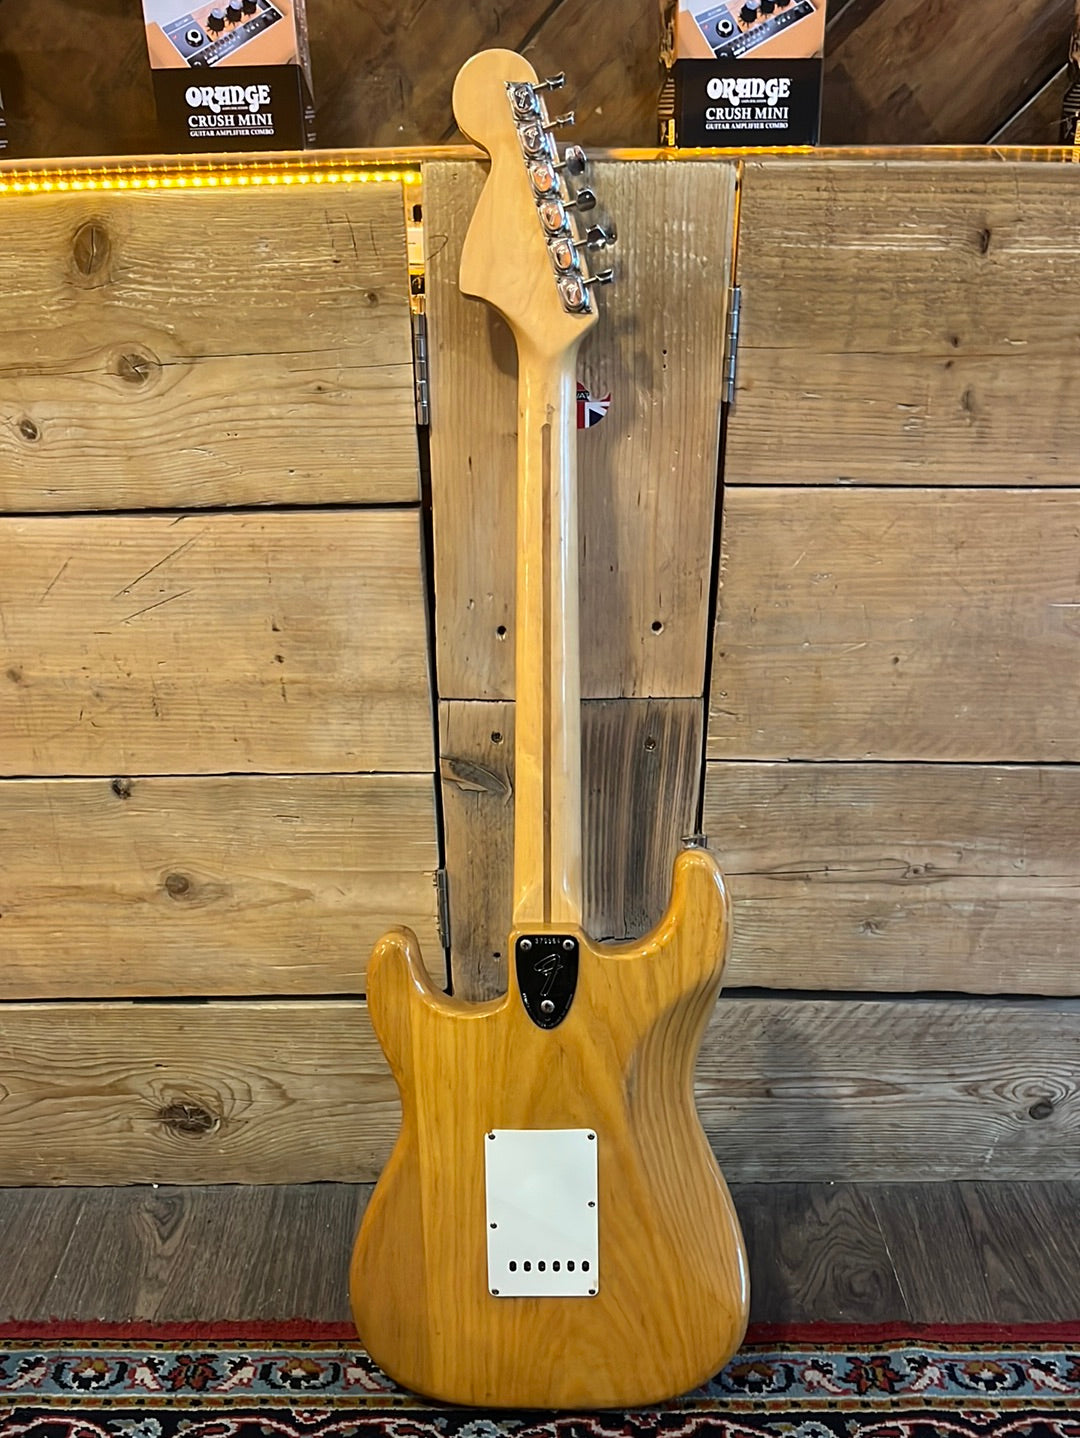 1973 Fender Stratocaster